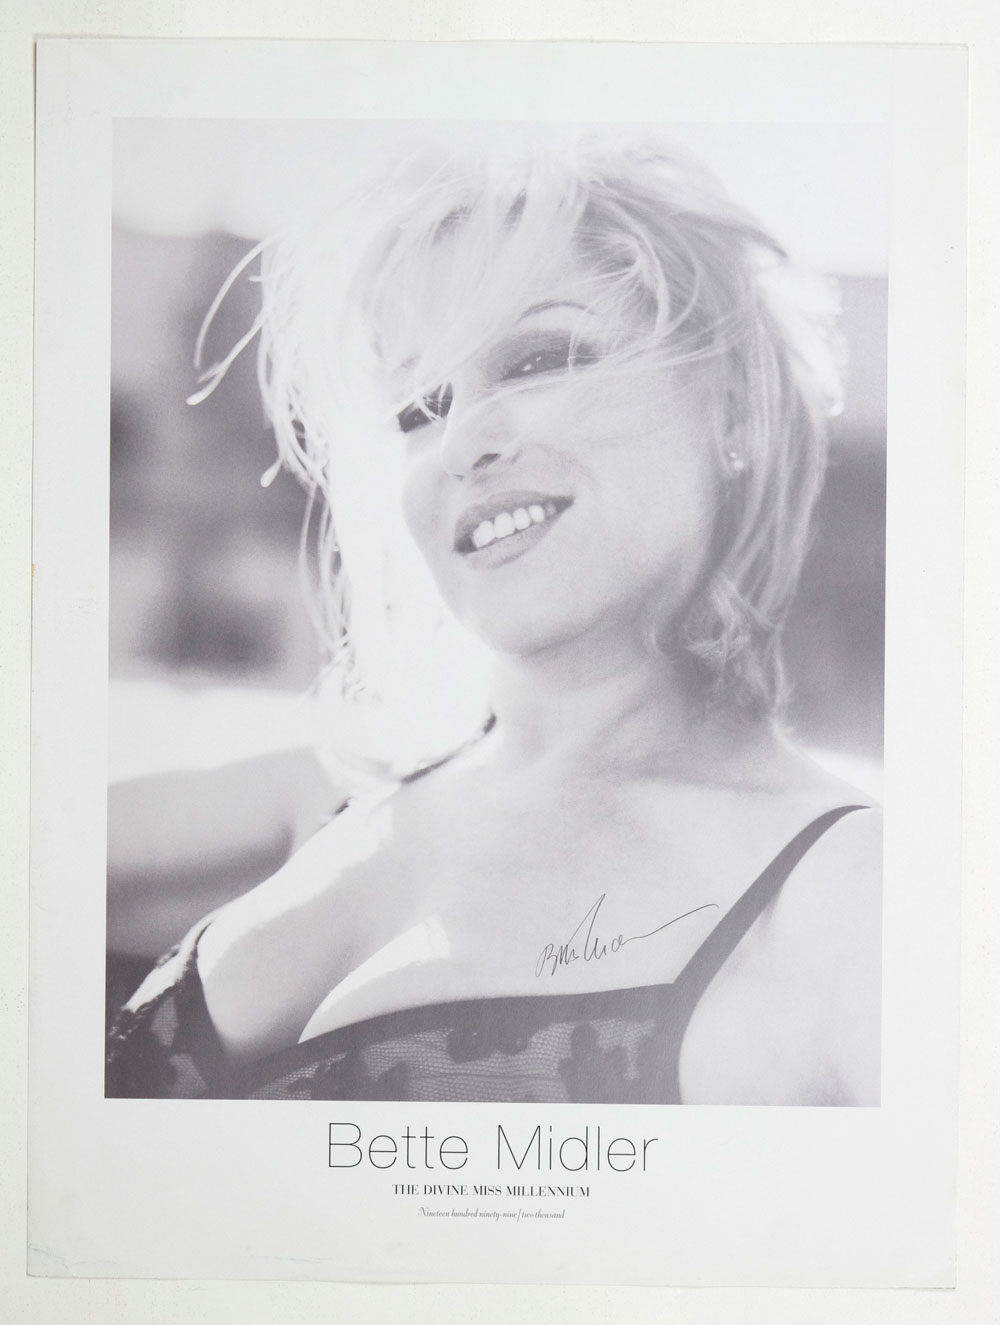 Bette Midler Poster 1999 The Divine Miss Millenium Tour Promotion 18 x 24